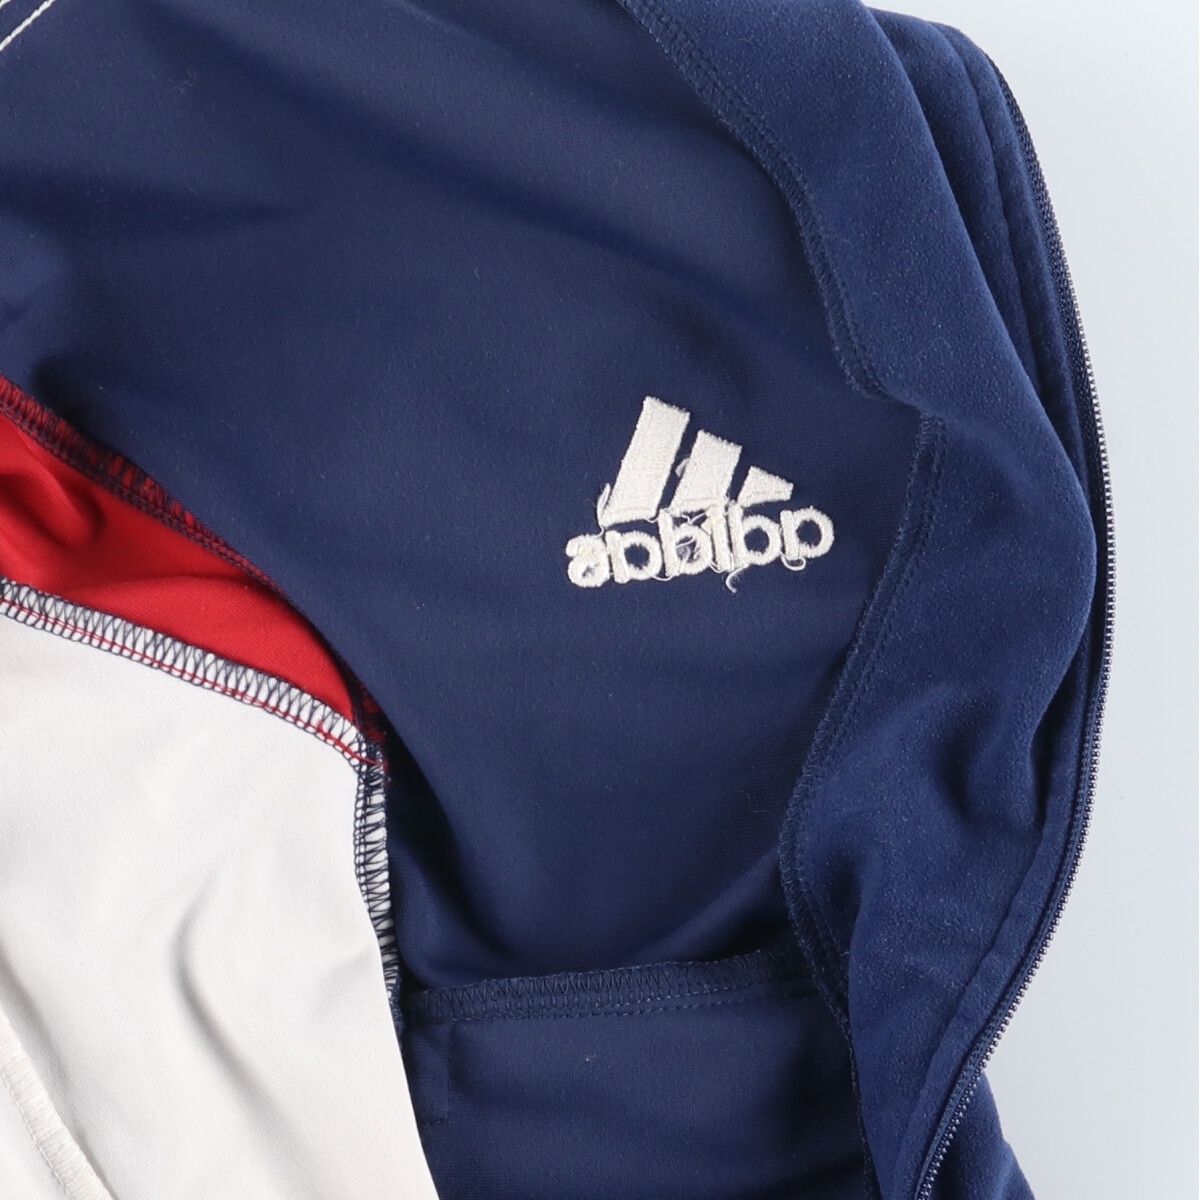  б/у одежда 90 годы Adidas adidas спорт Performance Logo велюр джерси спортивная куртка мужской S Vintage /eaa414166